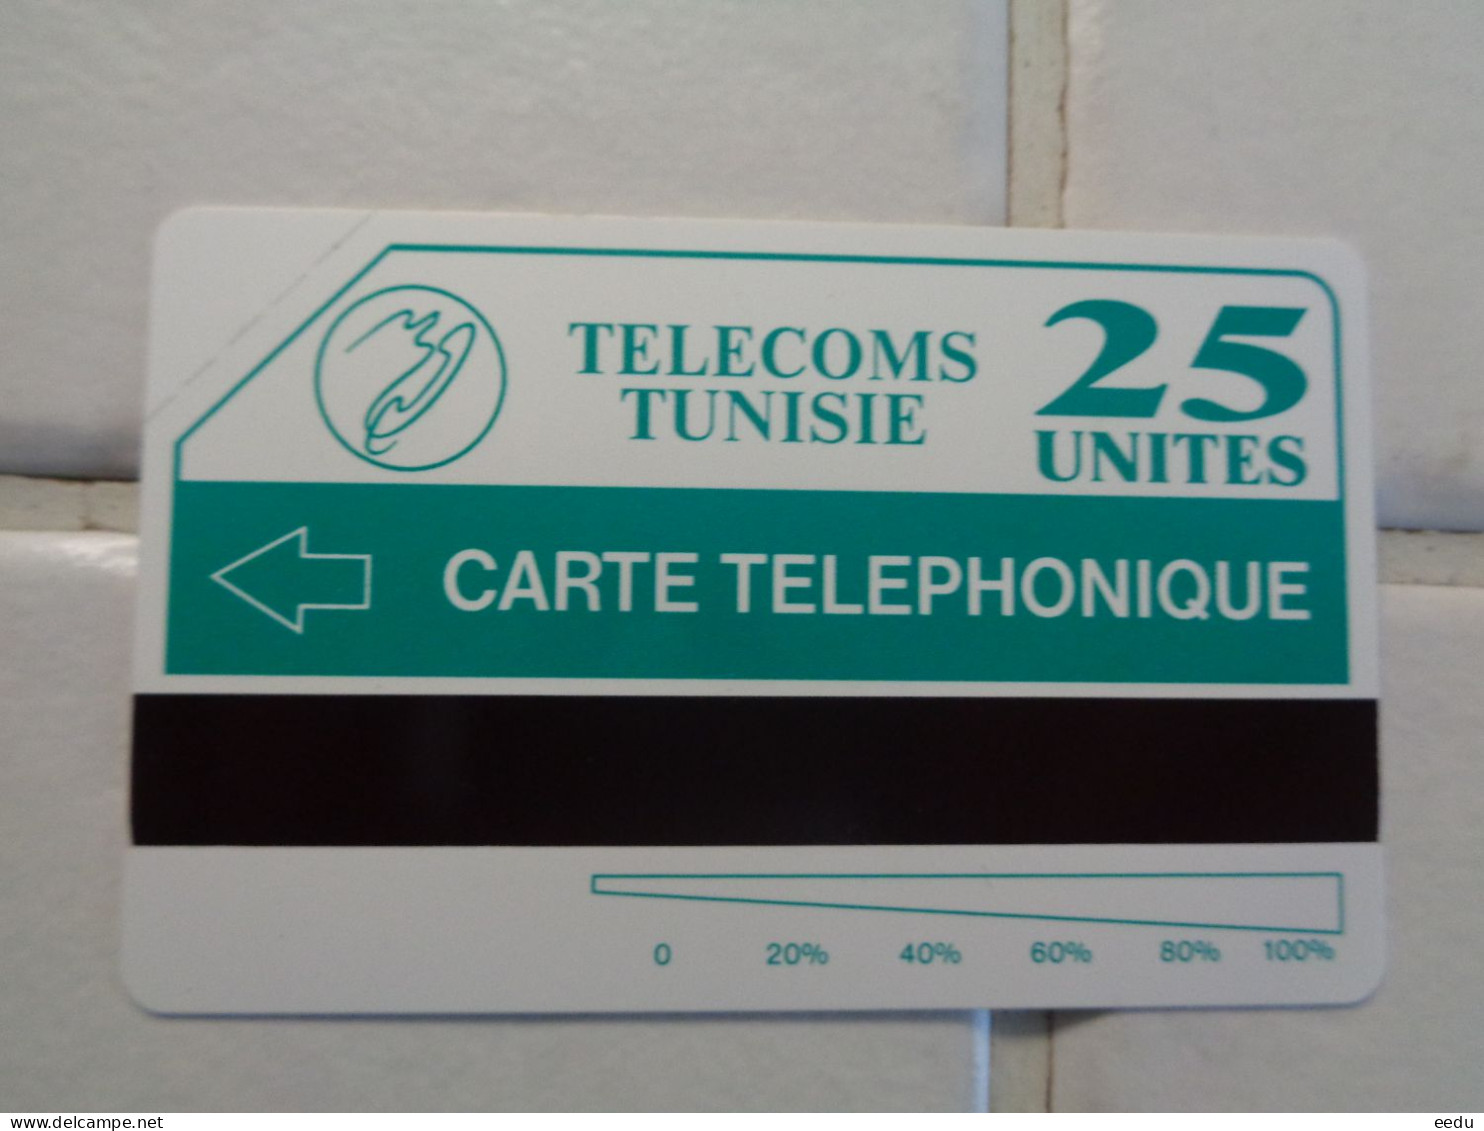 Tunisia Phonecard - Tunisia